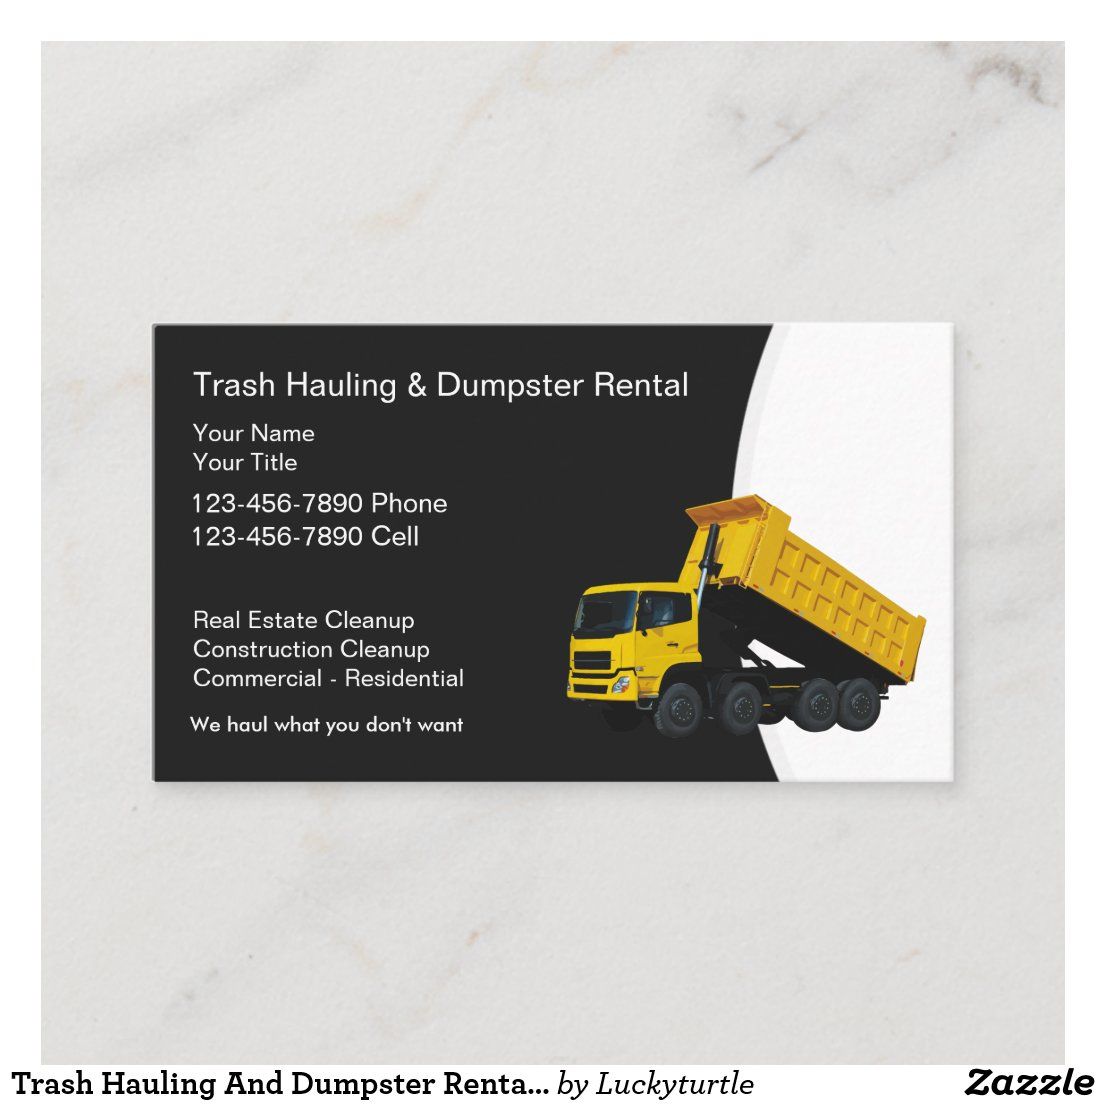 dumpster rental business cards 1